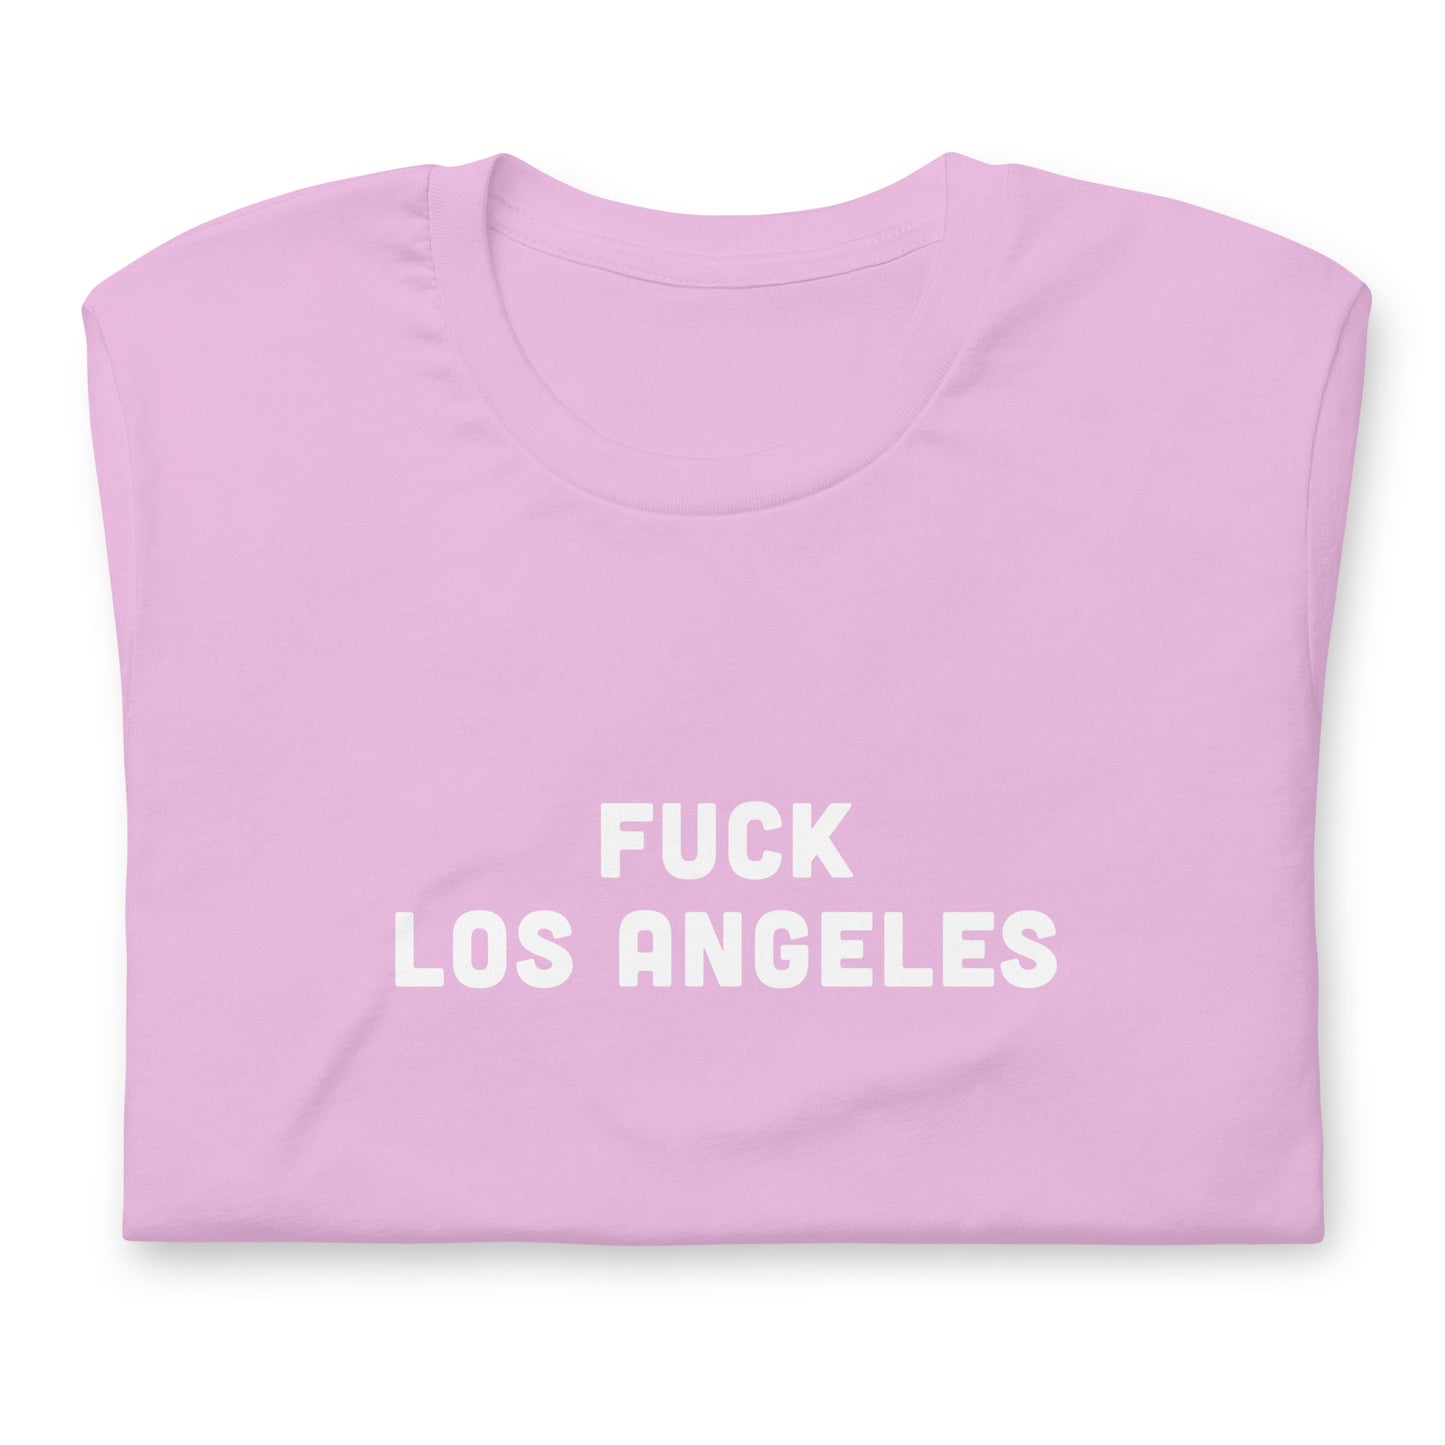 Fuck Los Angeles T-Shirt Size S Color Asphalt